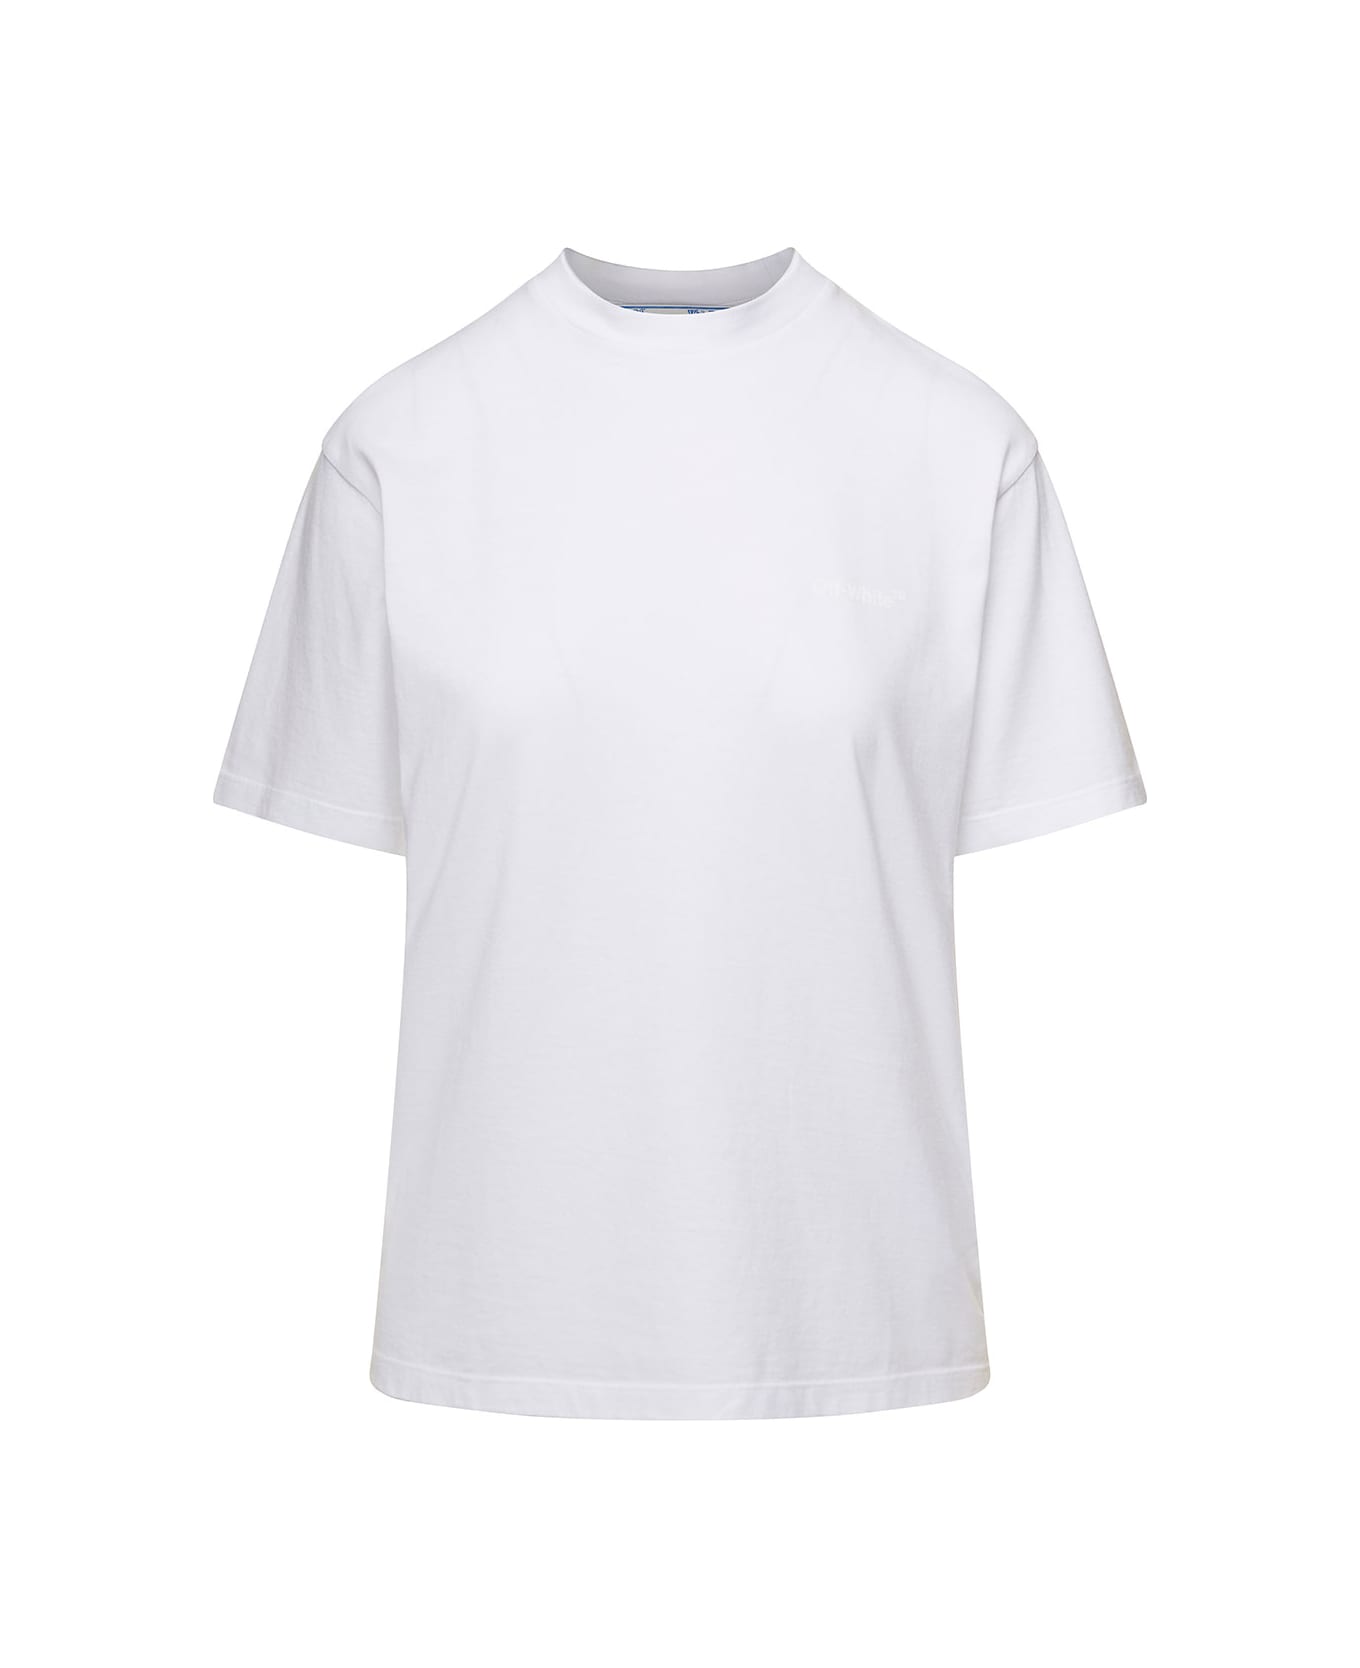 Off-White White Crewneck T-shirt With Tonal Logo And Diag Print In Cotton Woman - White